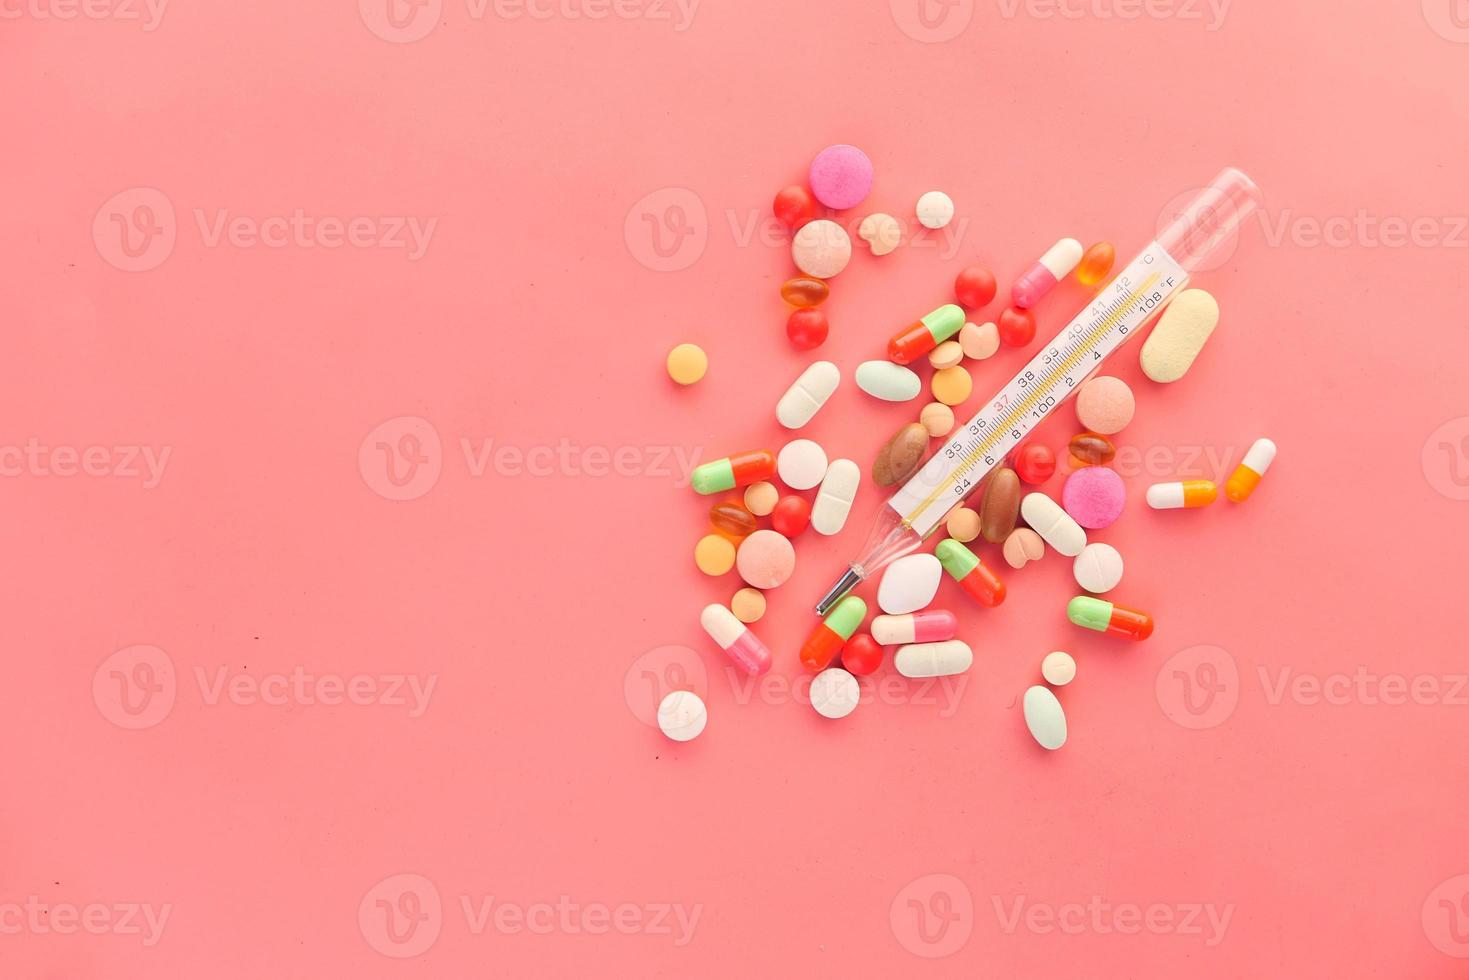 medicinsk termometer och piller på rosa bakgrund foto